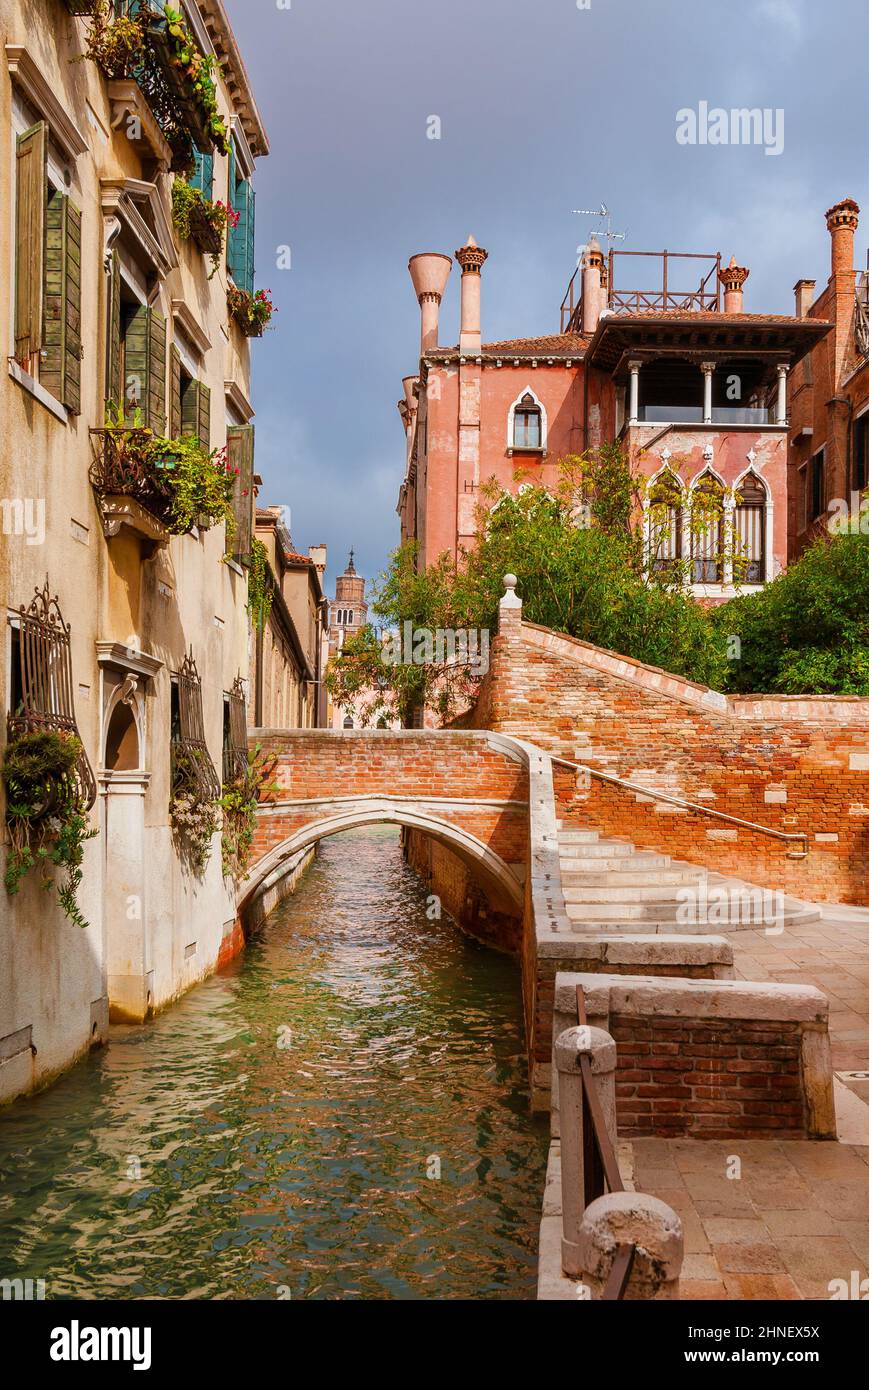 Blick auf den Rio delle Toreseie, einen charakteristischen Kanal Venedigs mit alten, traditionellen und farbenfrohen Häusern im ruhigen Dorsoduro-Viertel Stockfoto